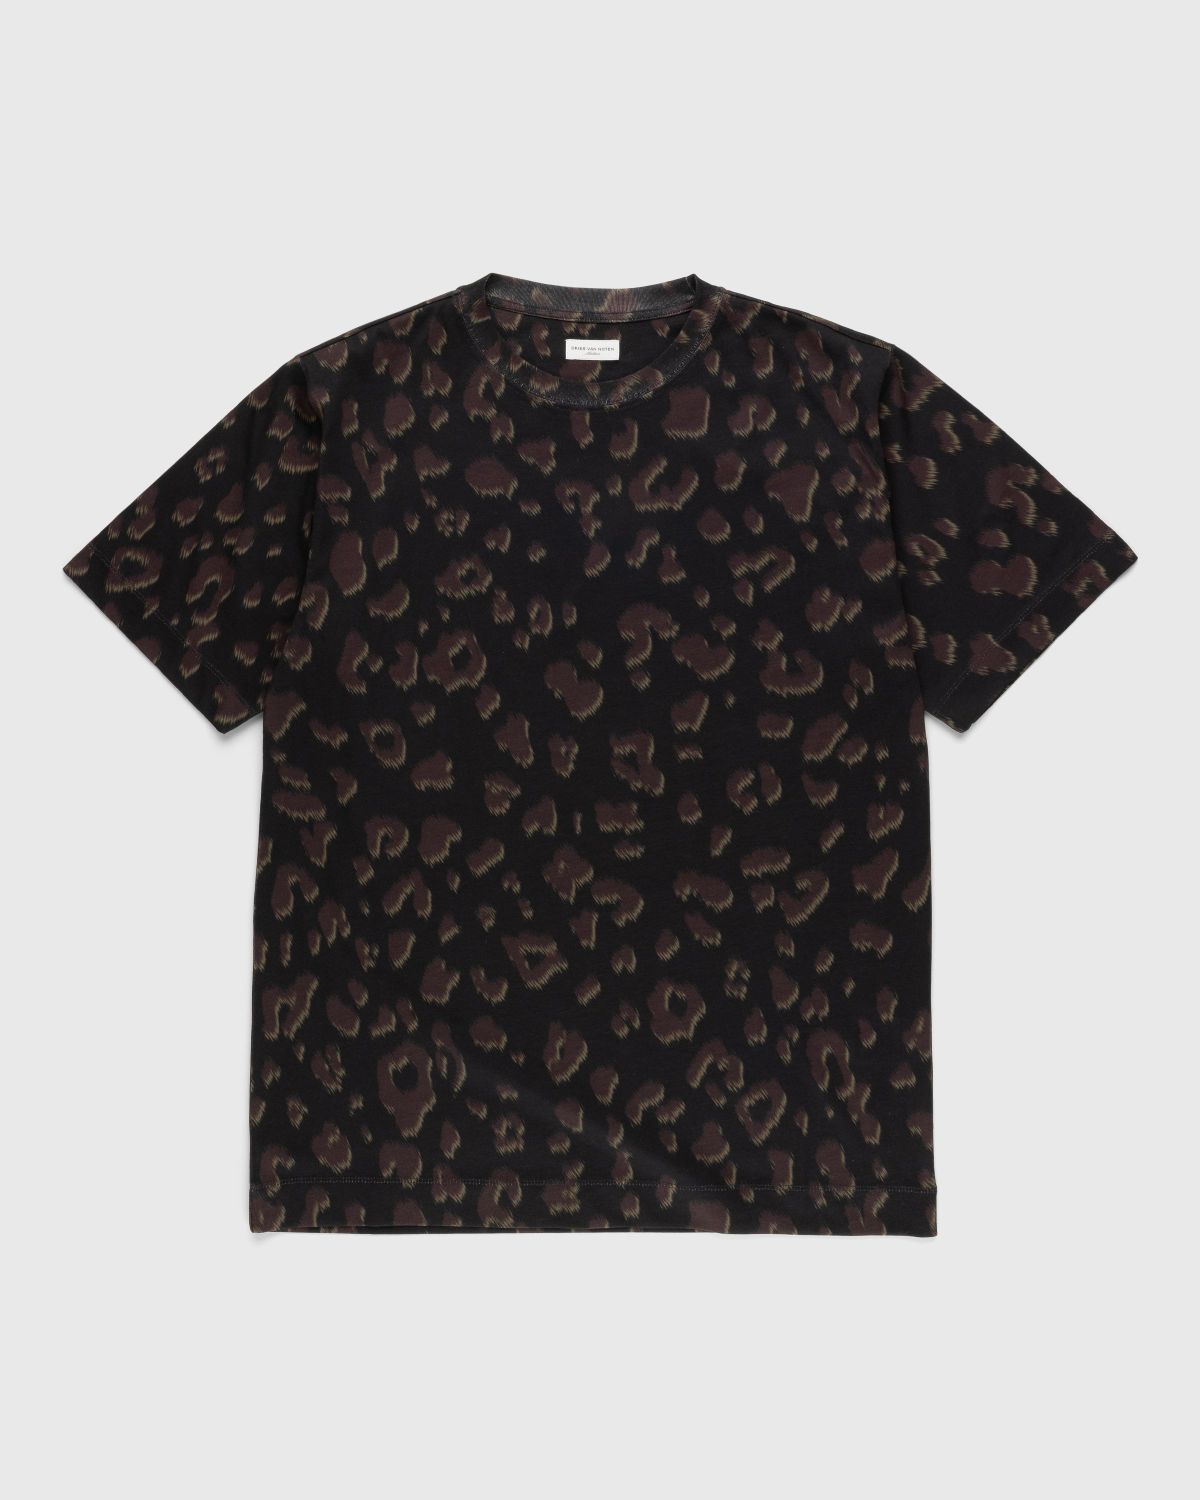 Dries van Noten – Hertz T-Shirt Black - Tops - Black - Image 1